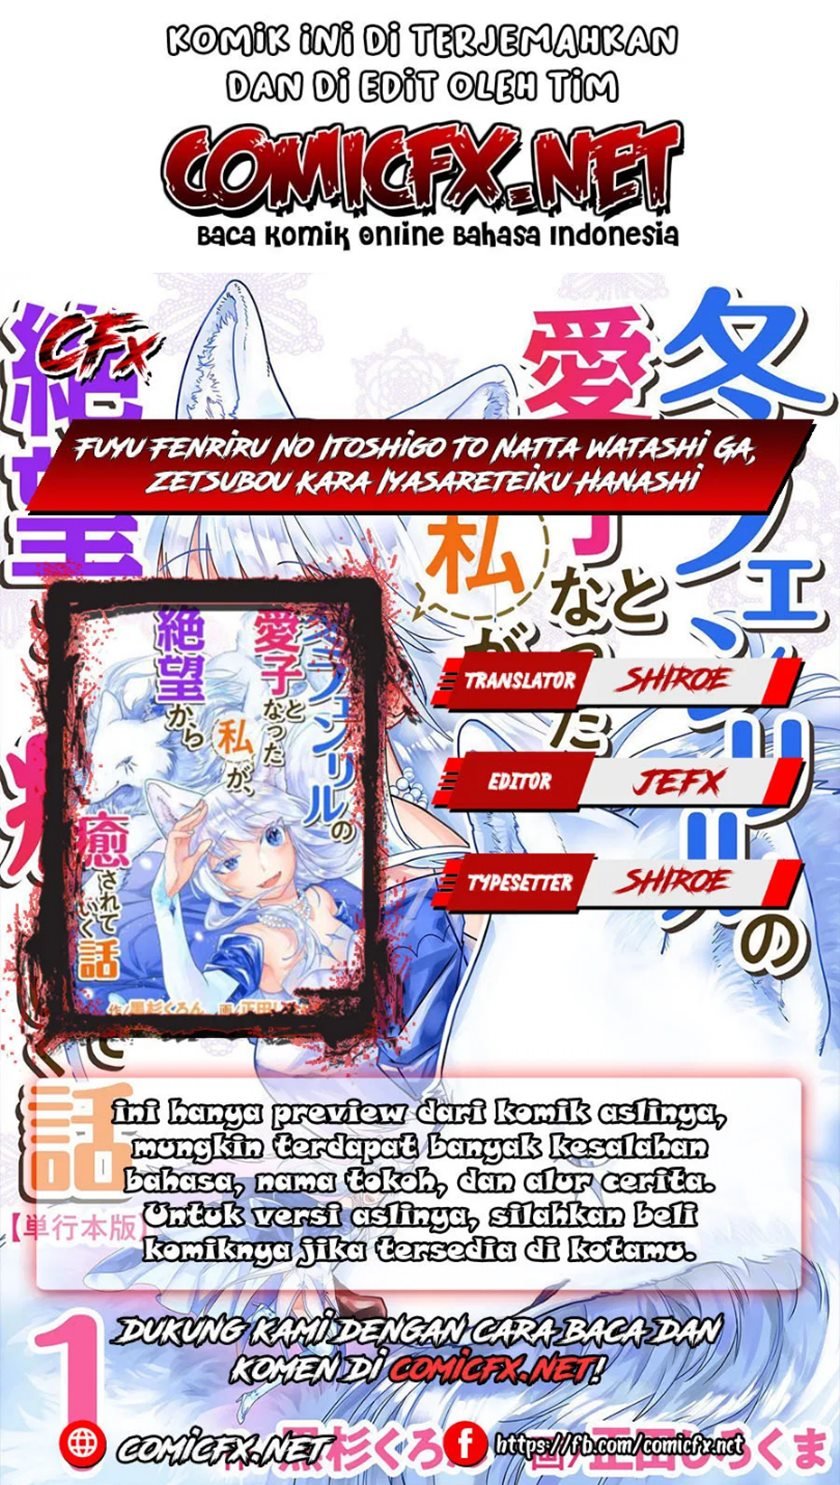 Fuyu Fenriru no Itoshigo to Natta Watashi ga, Zetsubou kara Iyasareteiku Hanashi Chapter 2.2